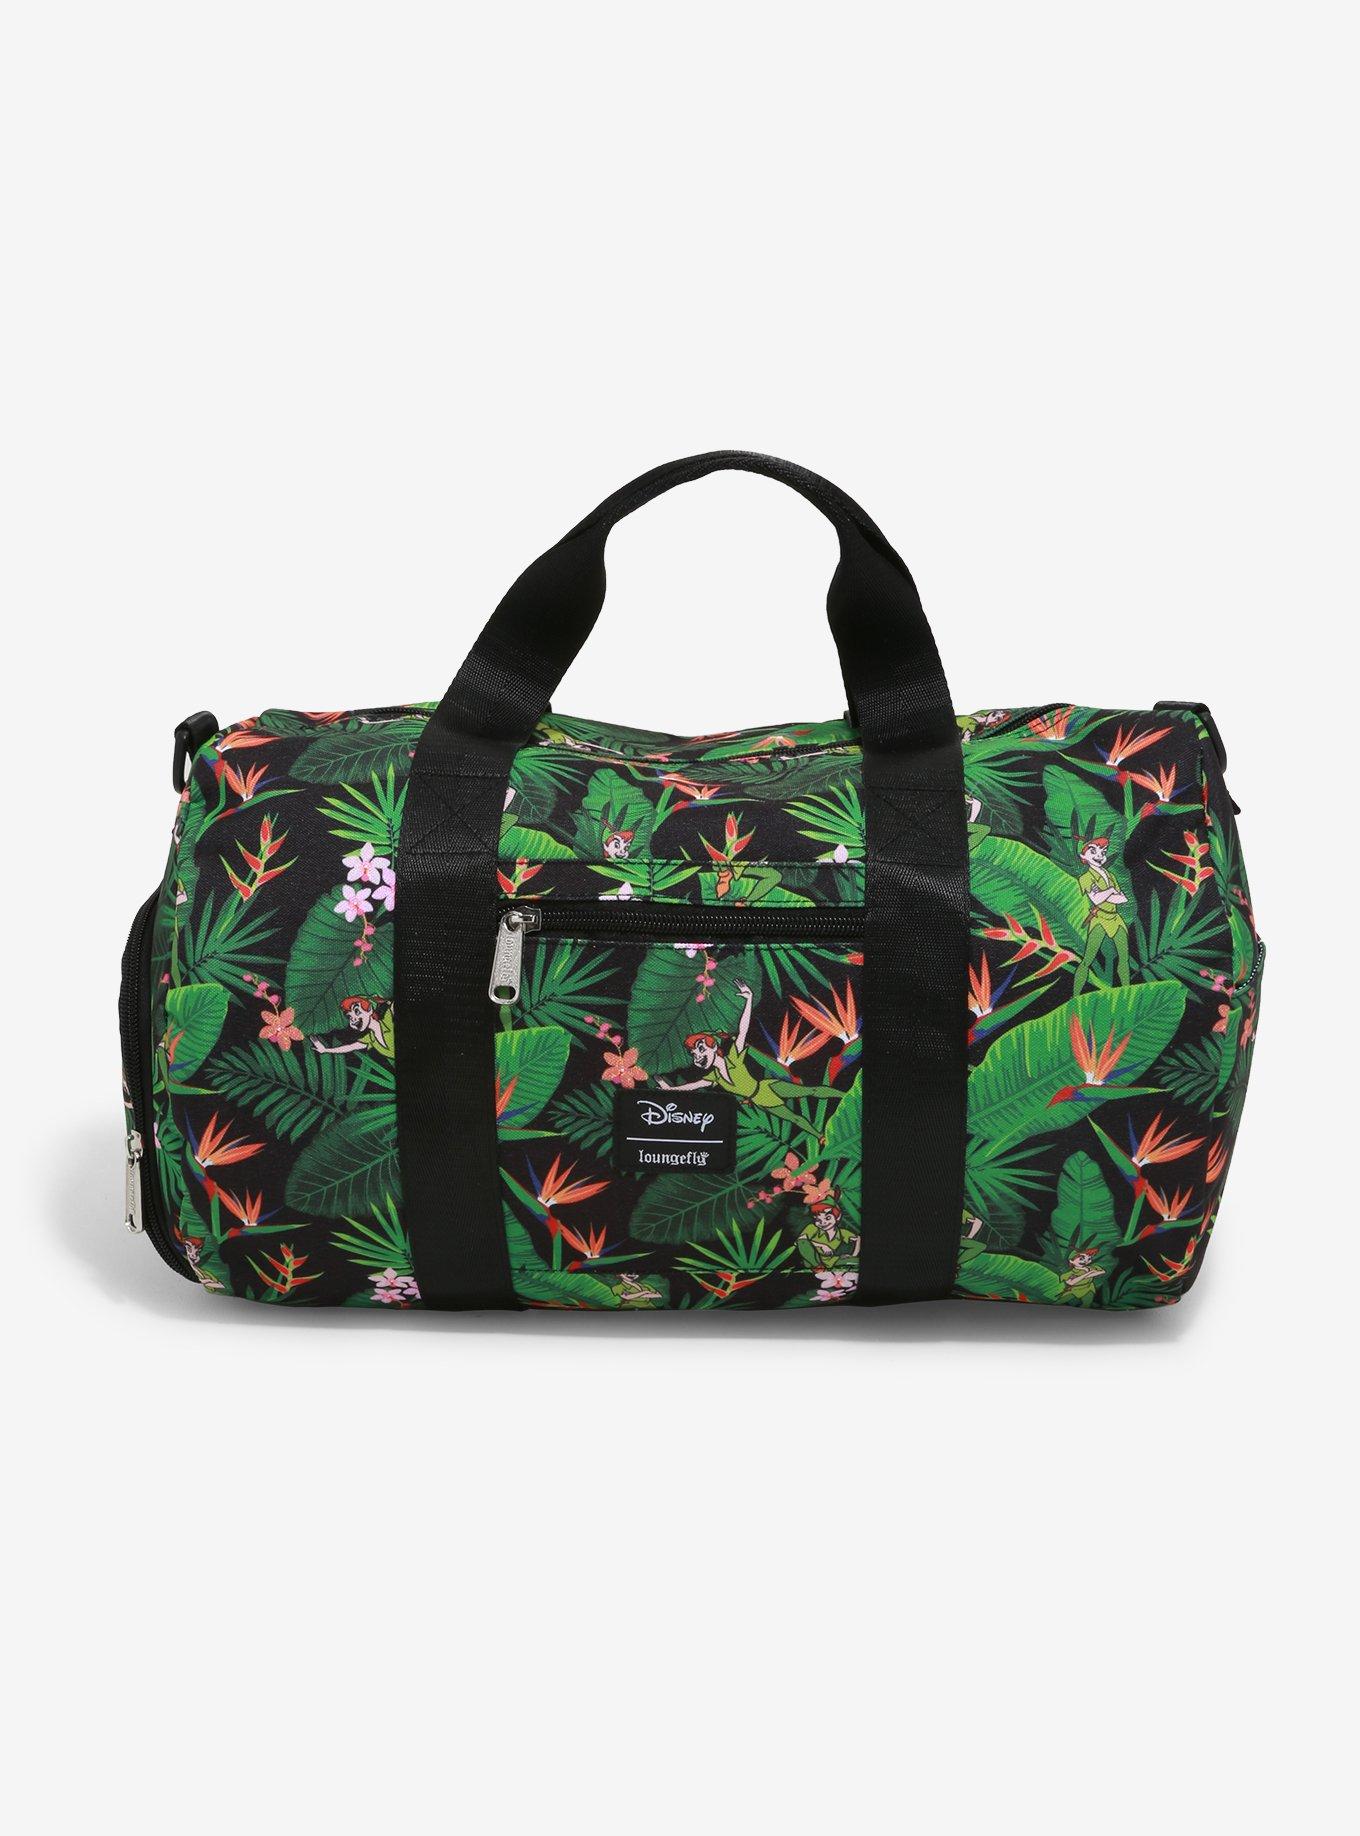 Peter Pan and Wendy Travel Bag | Peter Pan Duffel Bag | Disney Duffel ...